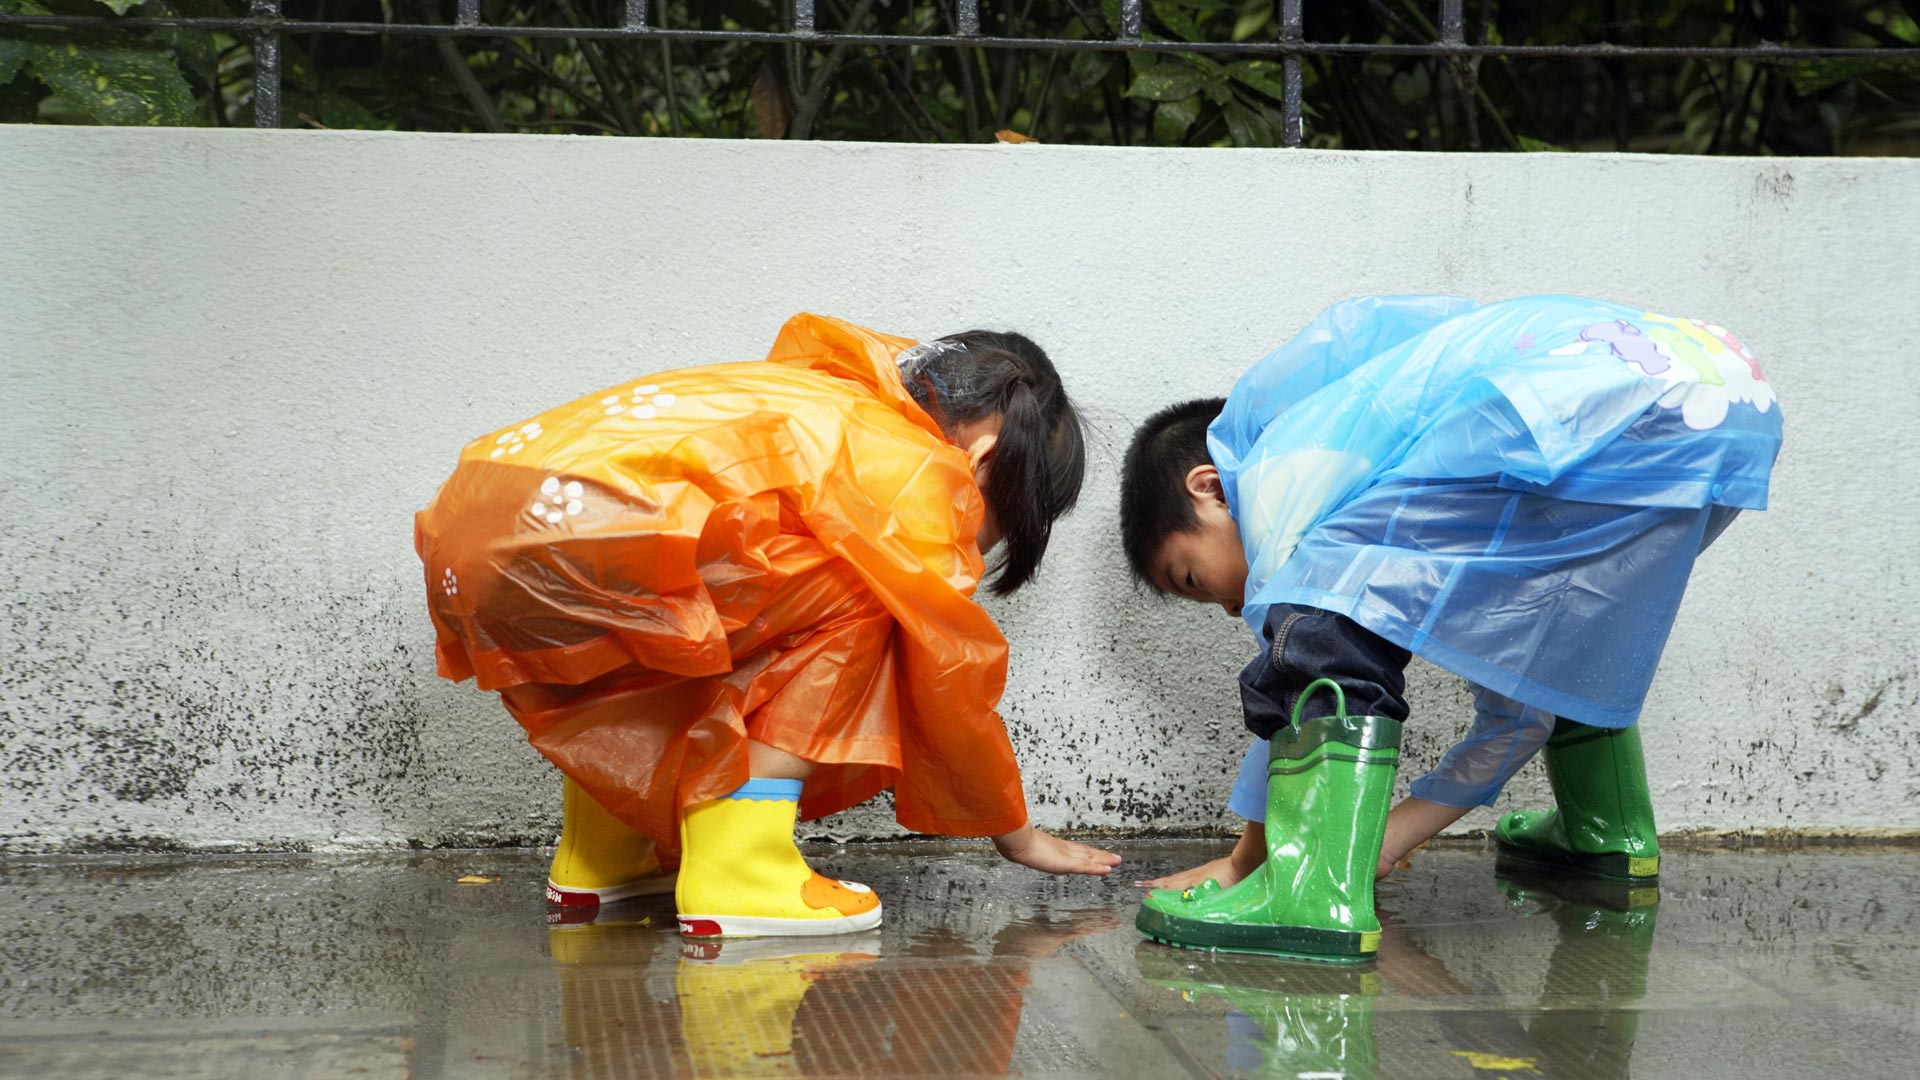 والپیپر منحصر به فرد از دوتا بچه زیر بارون با لباس های رنگی 